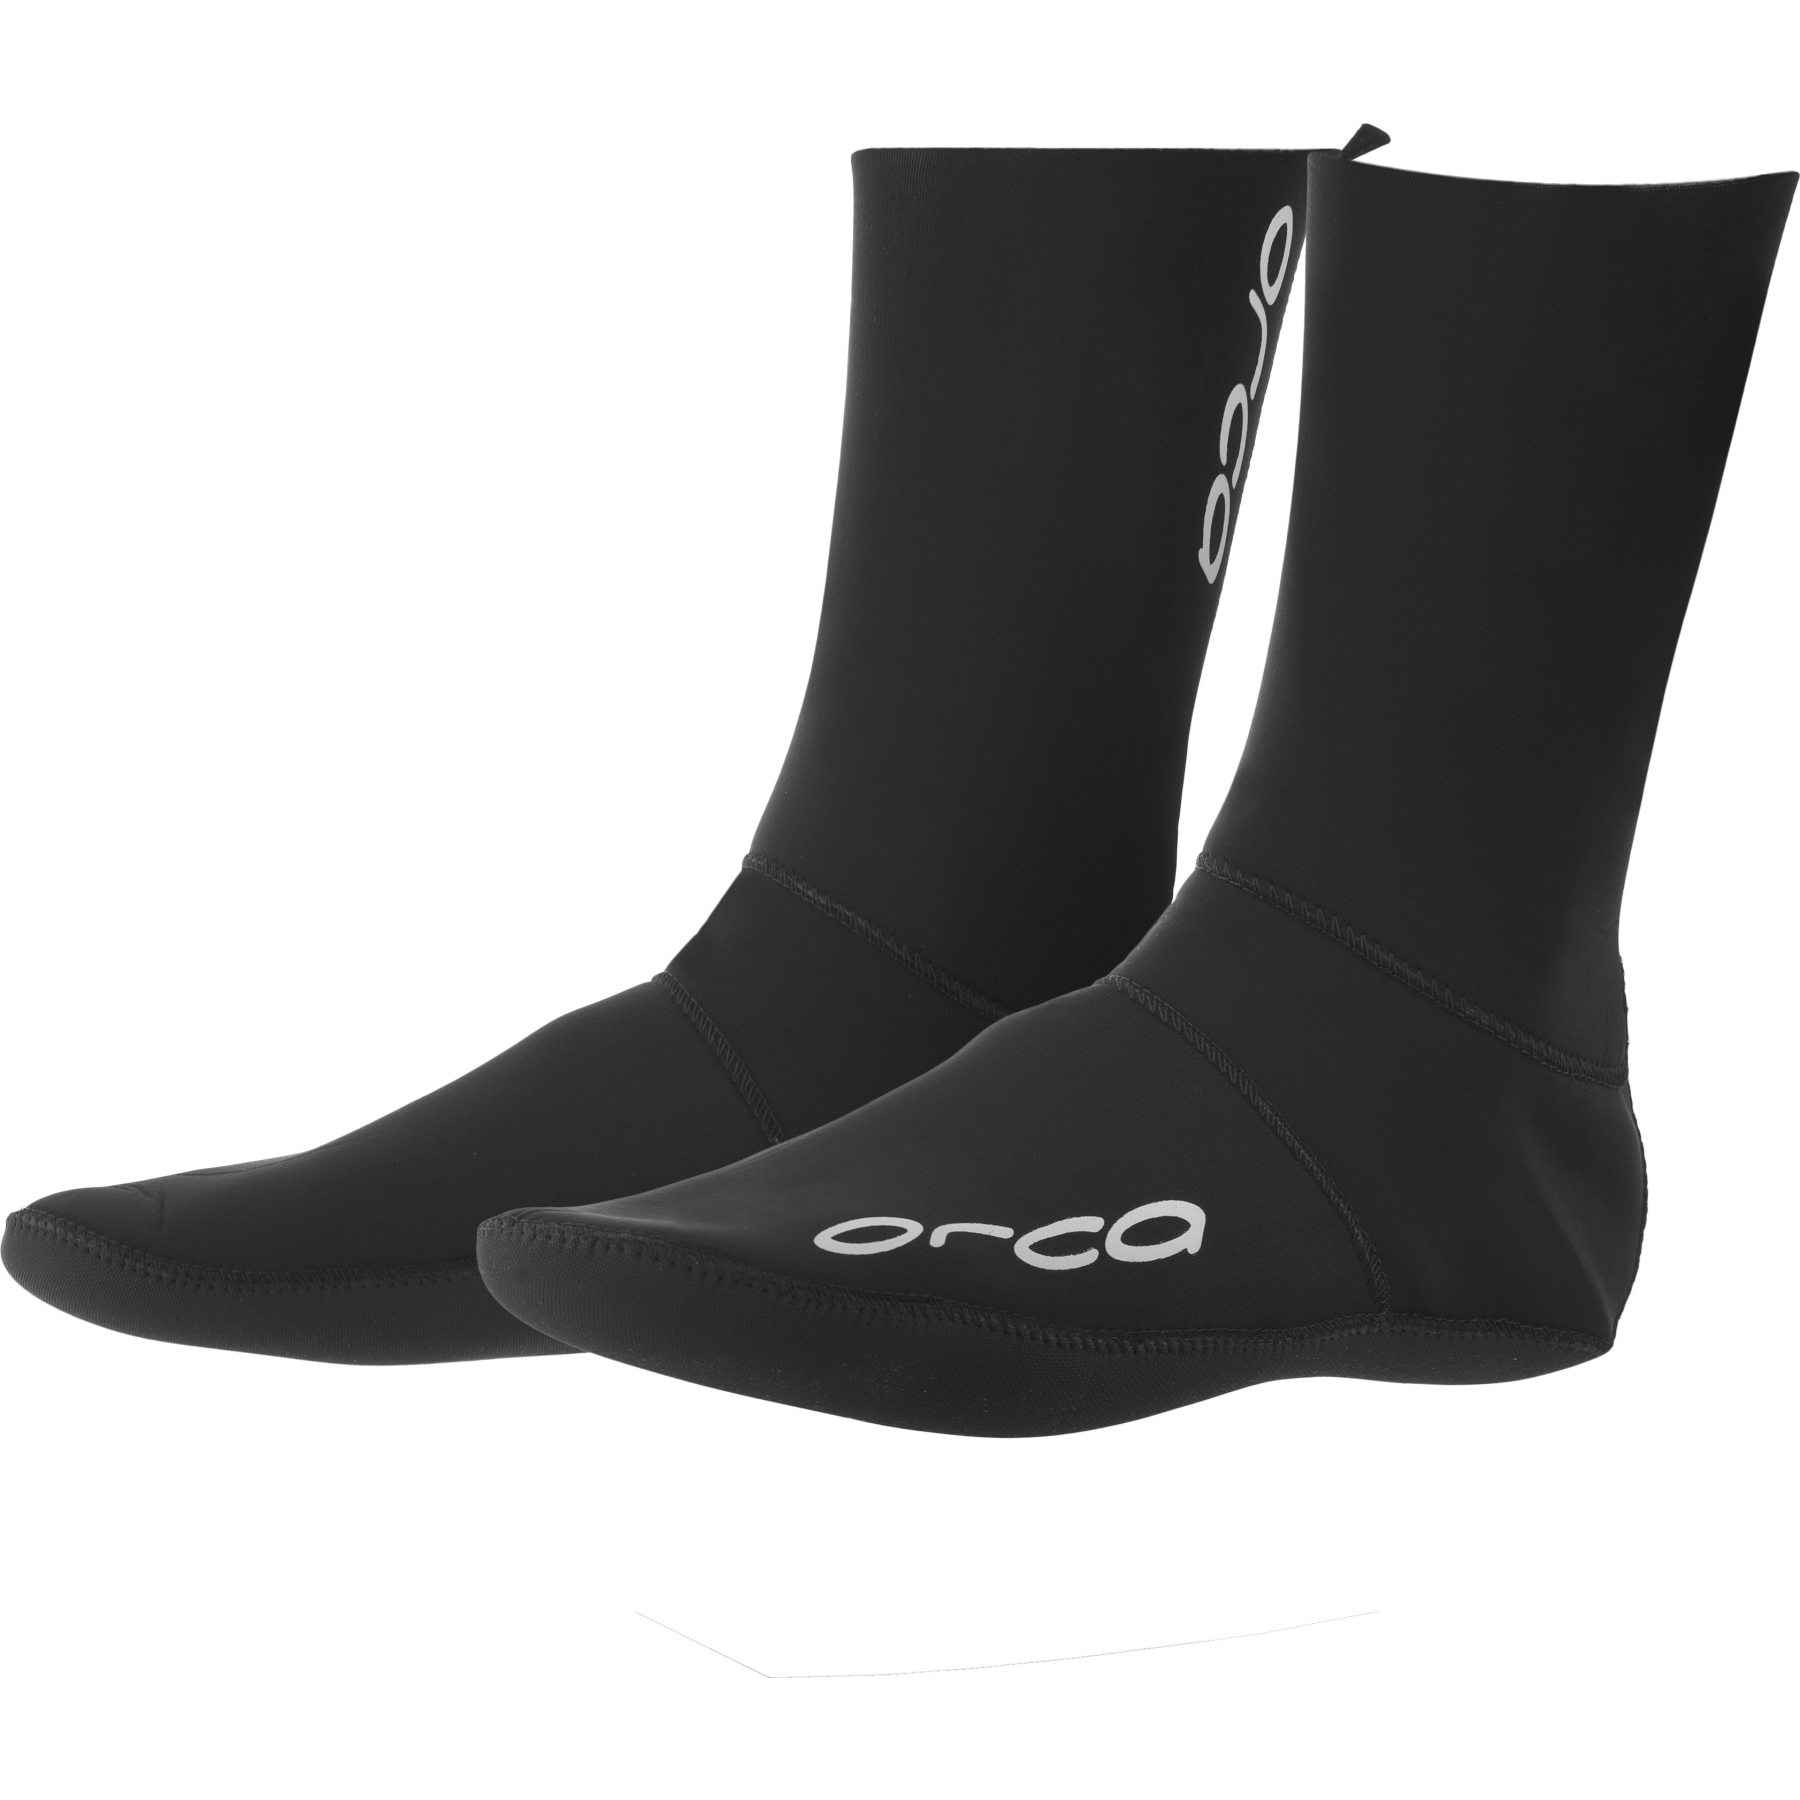 Produktbild von Orca Swim Socks Schwimmsocken - schwarz